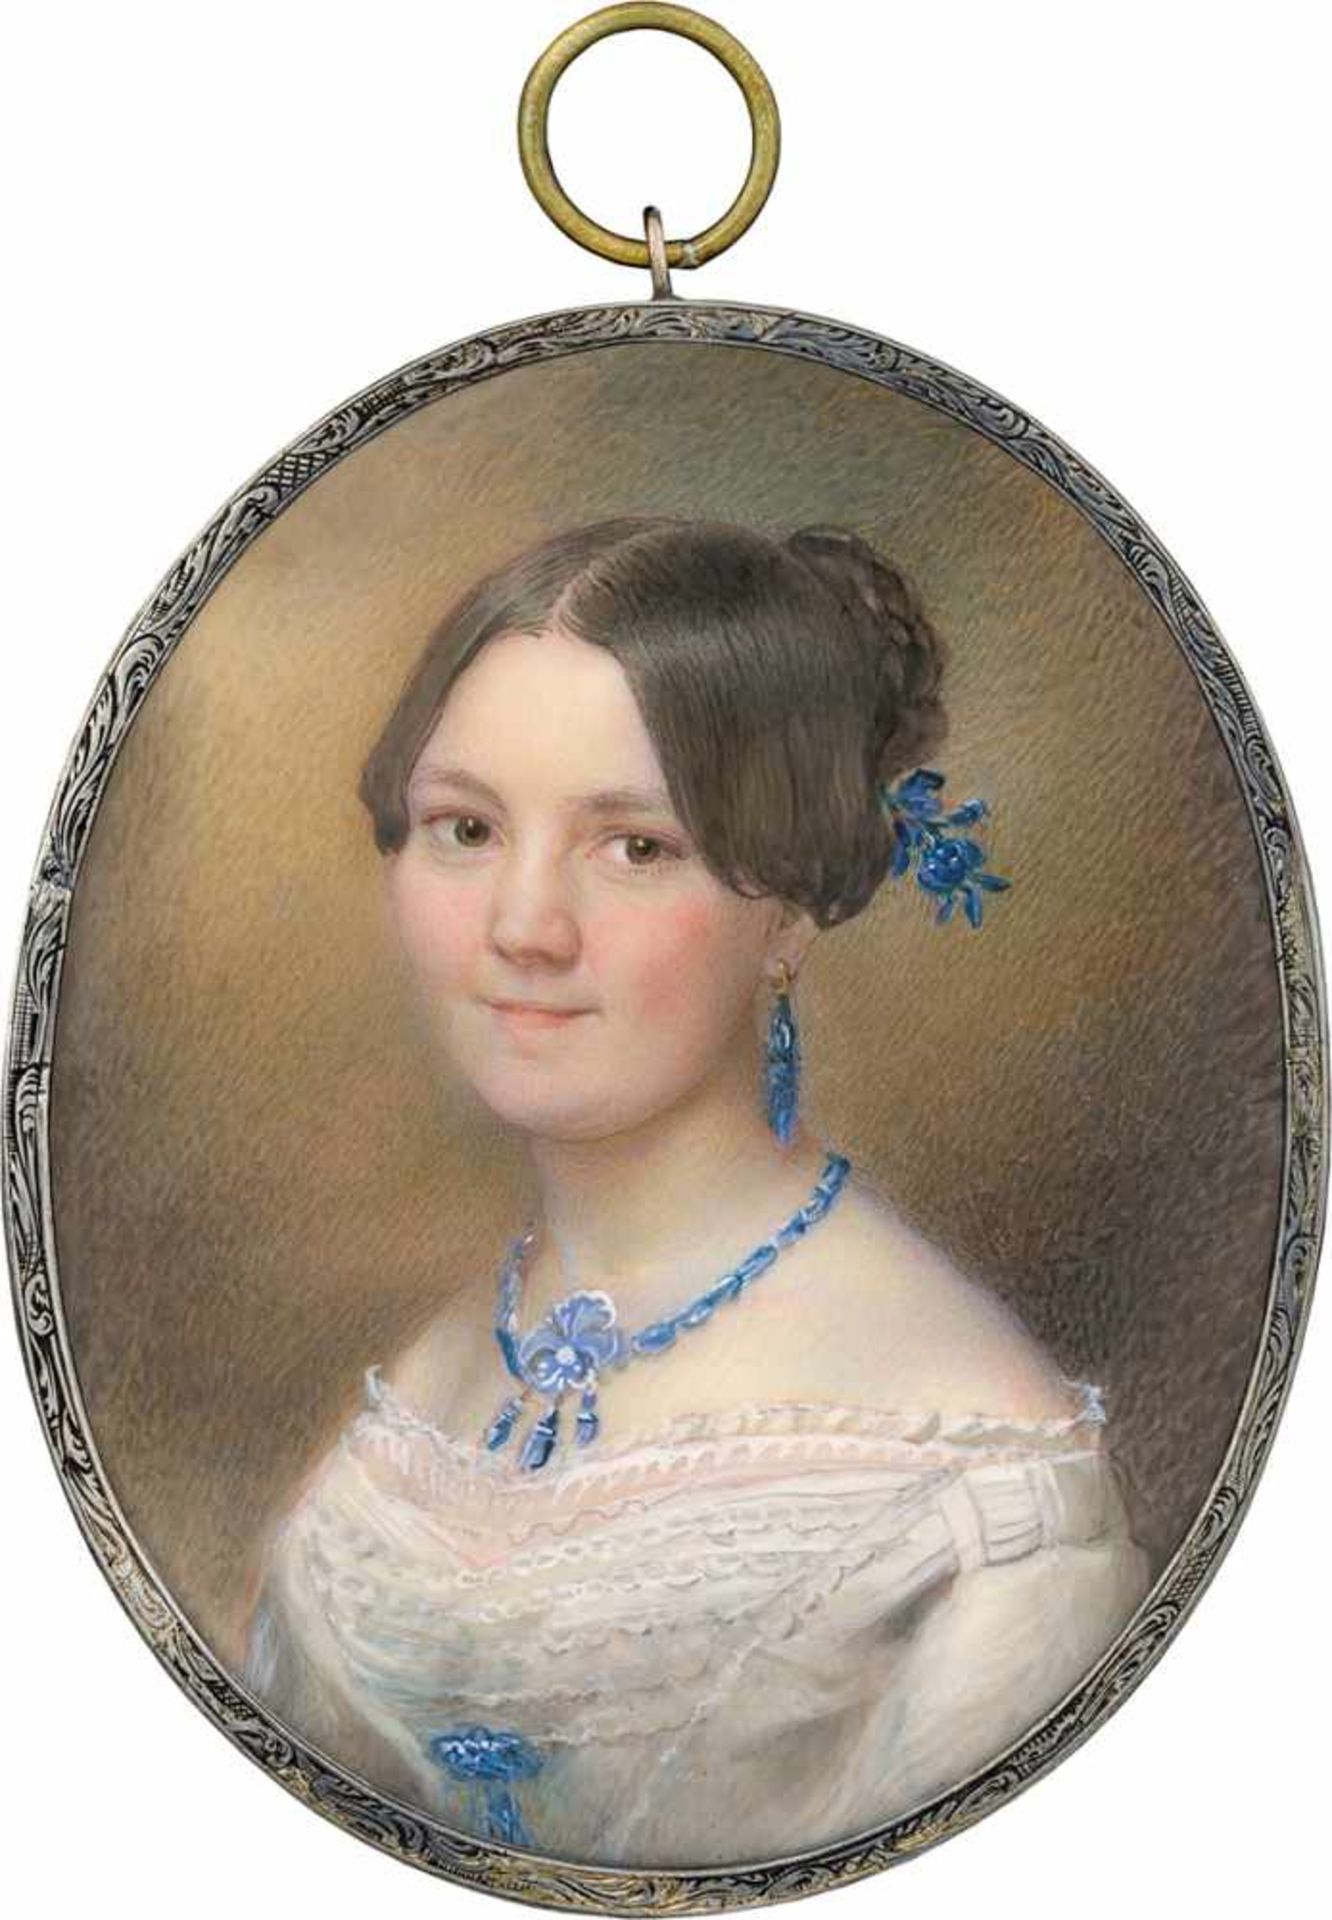 Kordik (auch Kordyk), Georg: Miniatur Portrait der jungen Maria Christovna Perné in weißem Klei